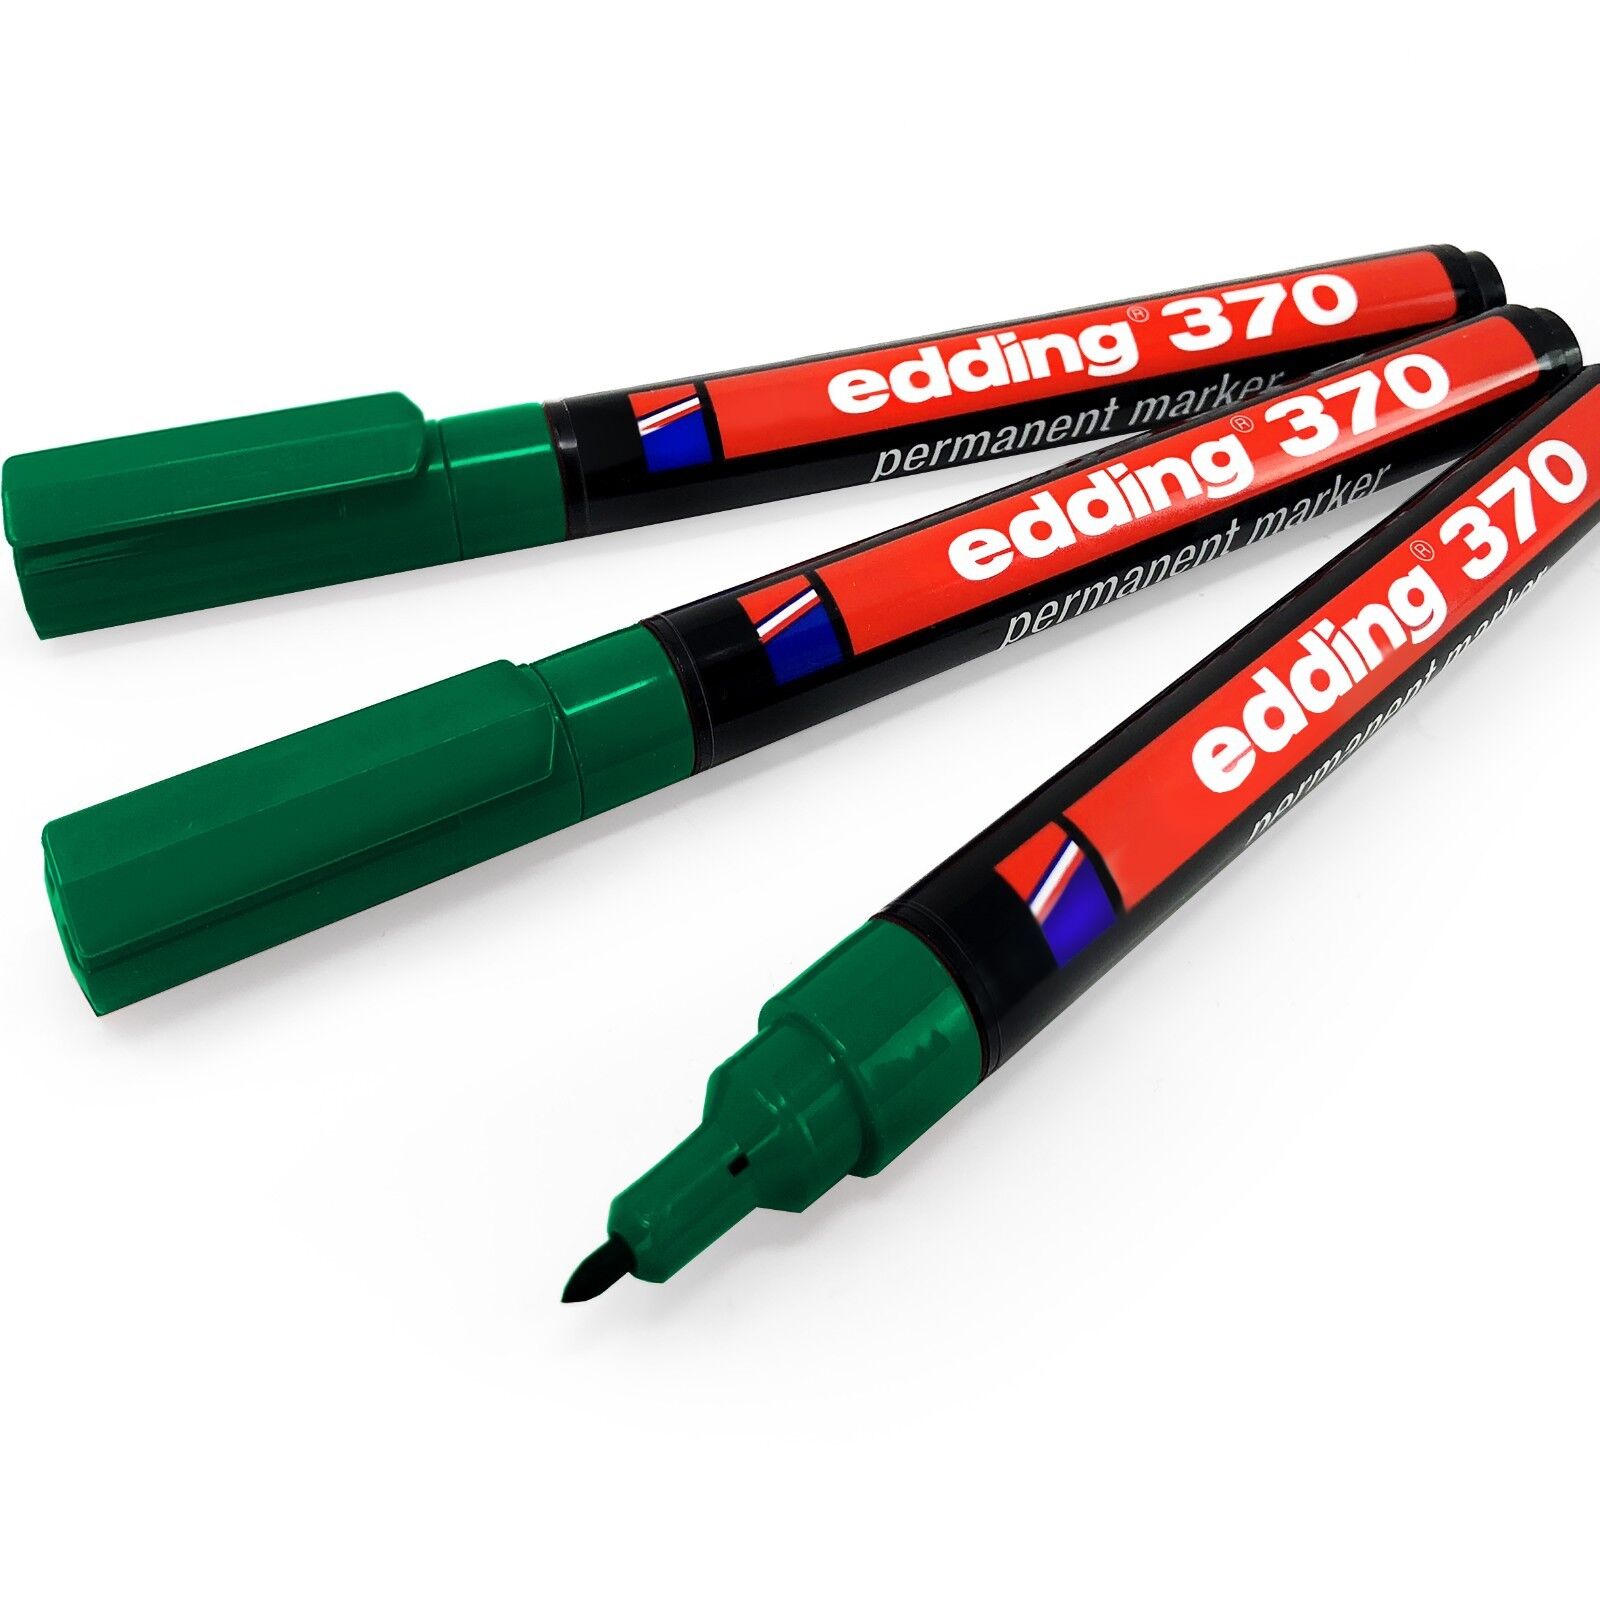 Edding 370 Permanent Marker Pen – 1mm Bullet Tip – Green – Pack of 3